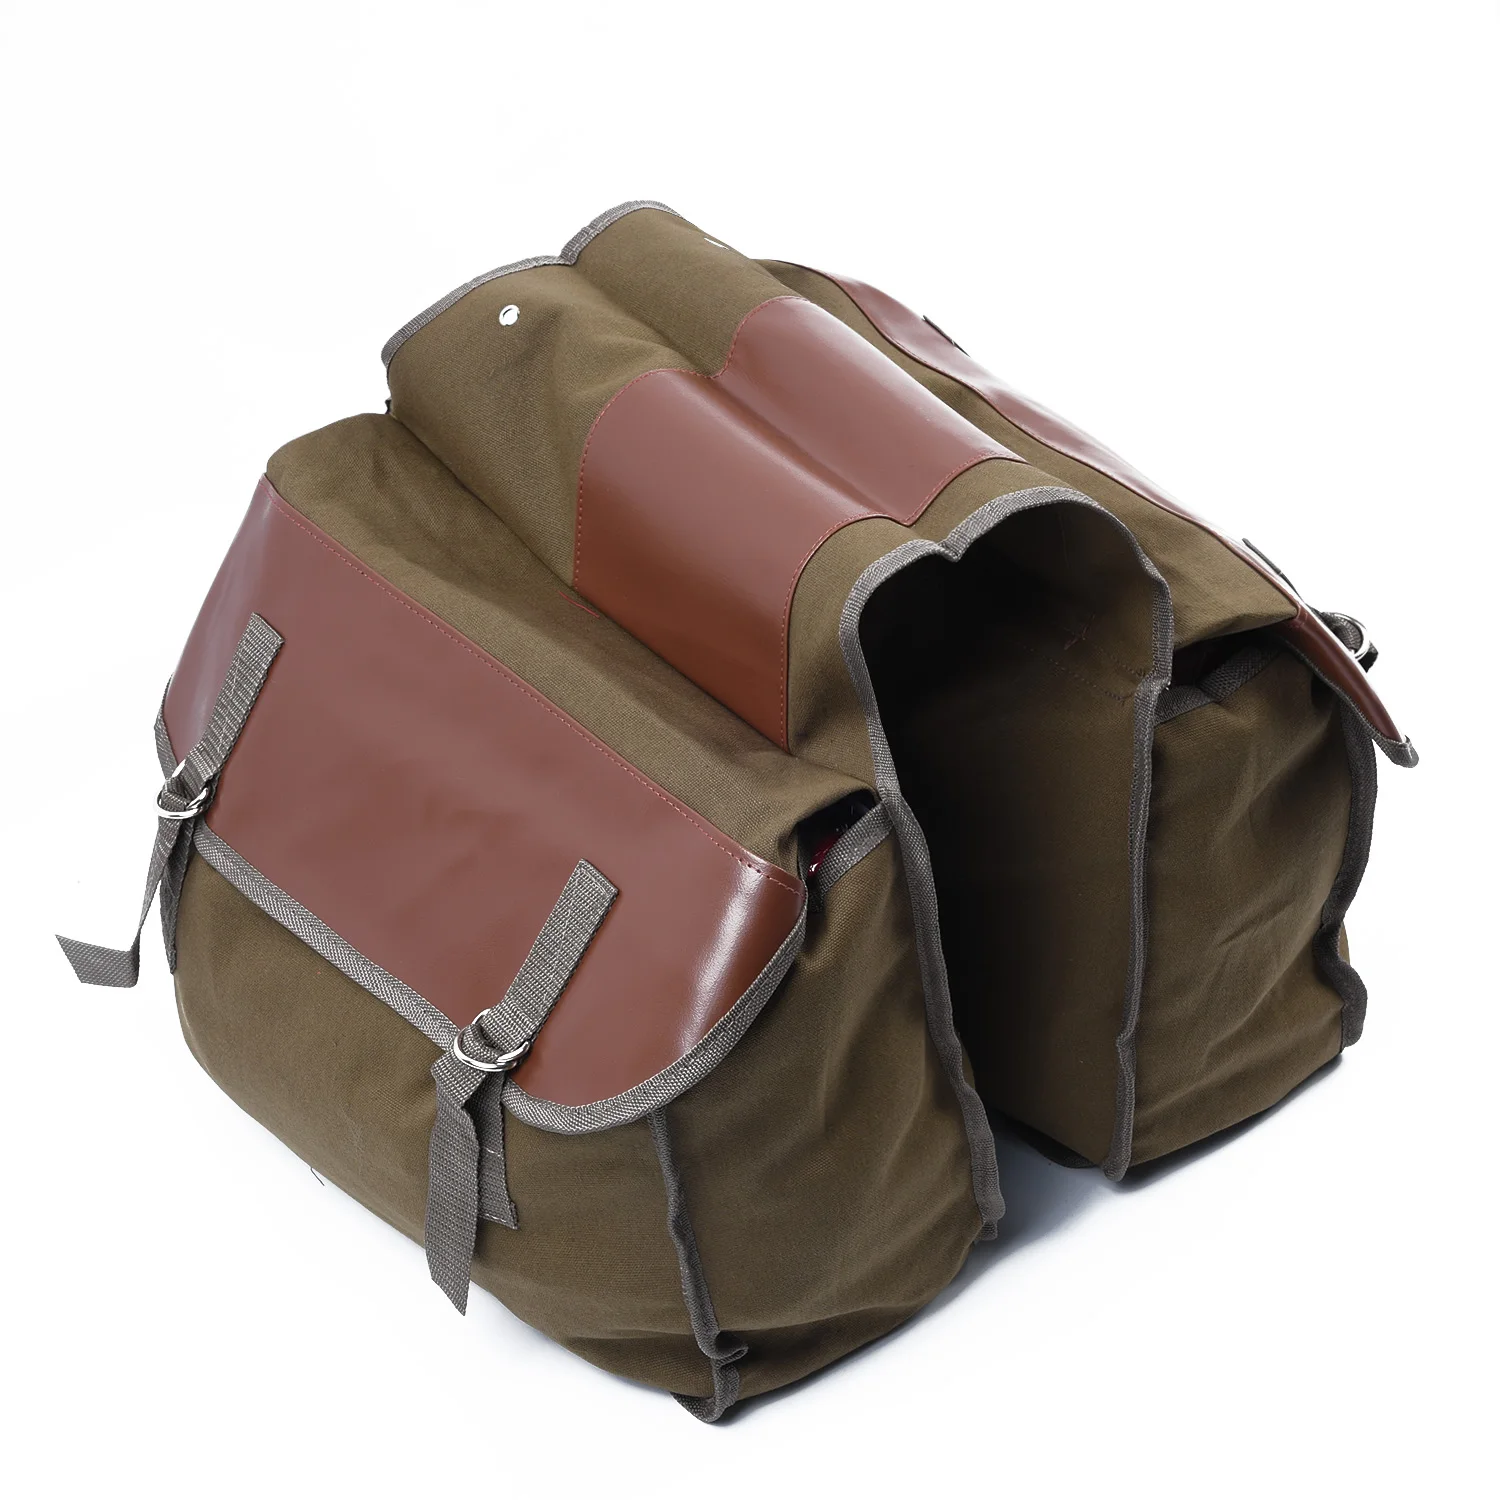 Мотоциклетная парусиновая боковая седельная сумка Equine Back Pack для Ha-ley Sportster, мотоциклетный рюкзак, седельная сумка с 2 карманами для Hon/da